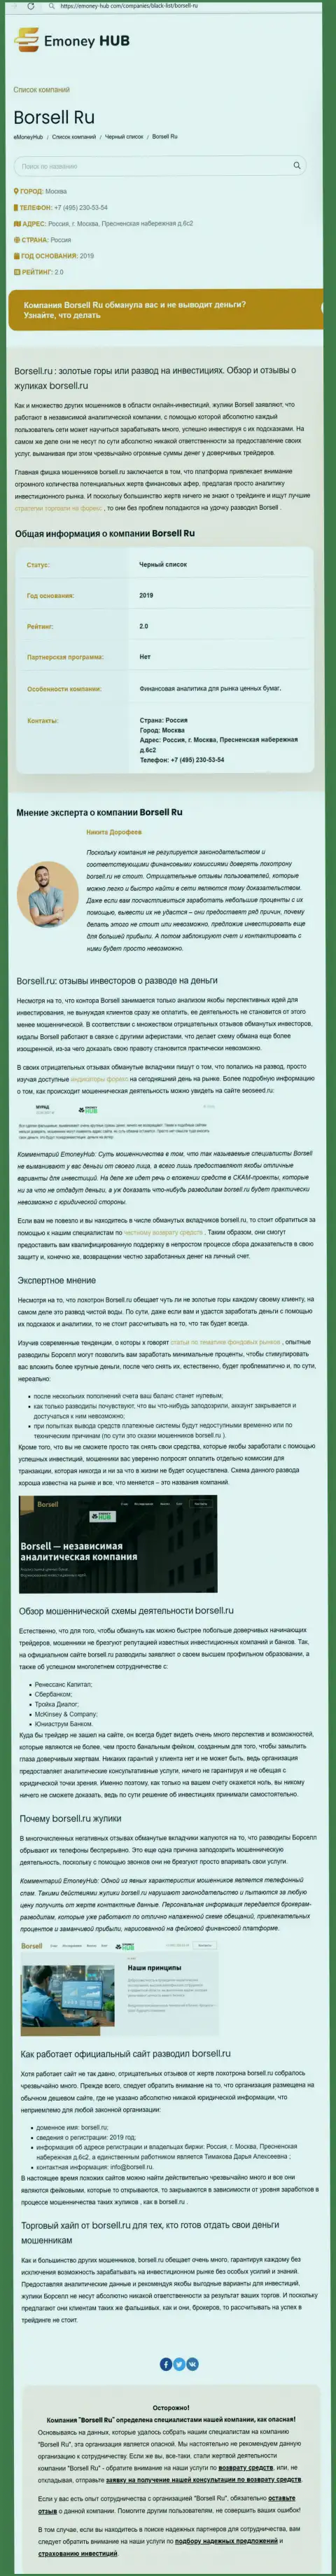 Детально просмотрите предложения совместного сотрудничества Borsell Ru, в компании лохотронят (обзор мошеннических действий)